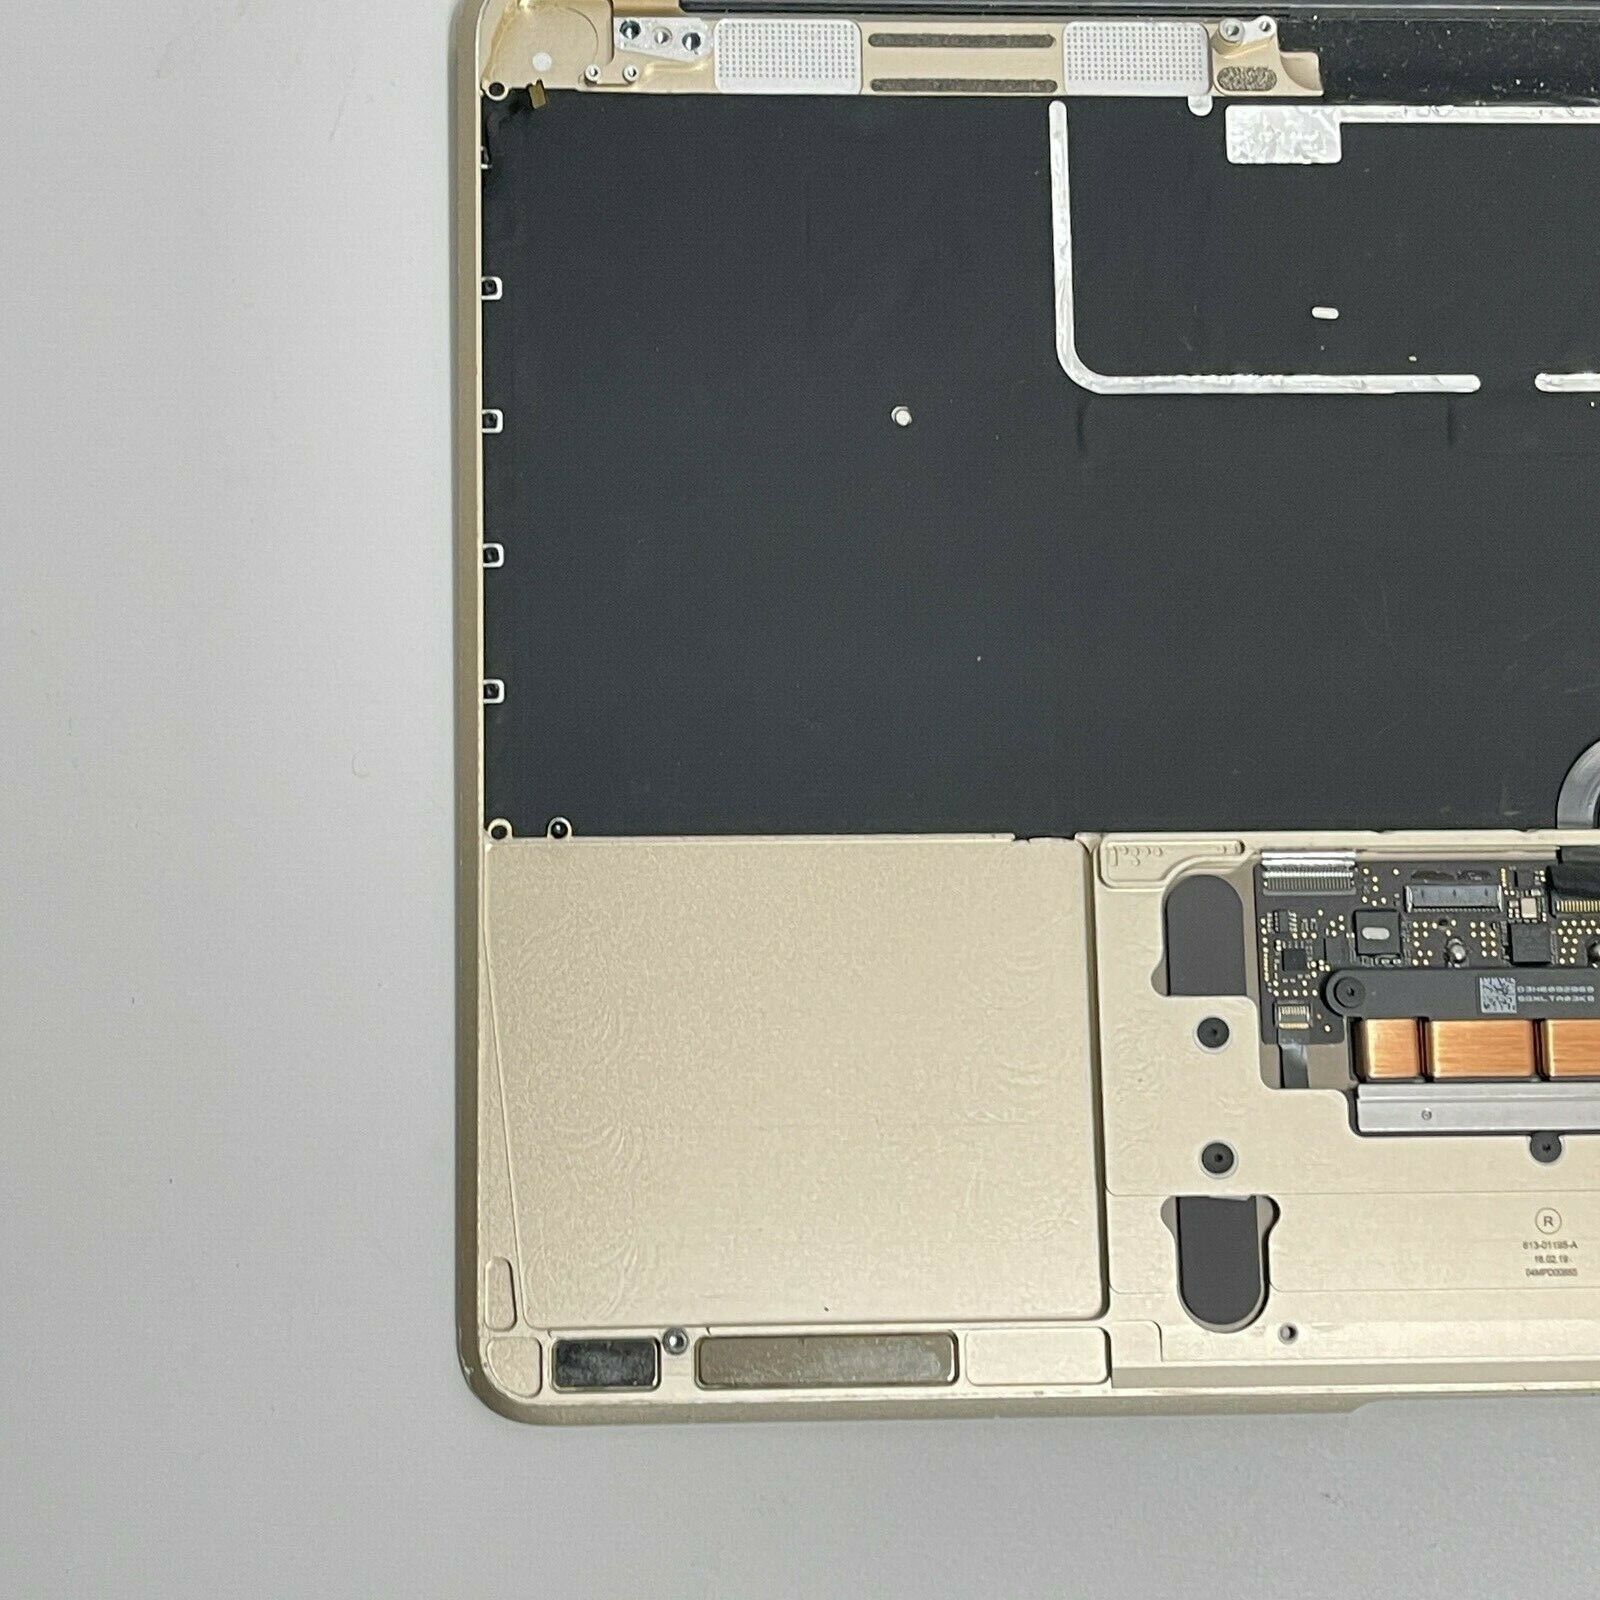 MacBook Retina 12インチ 2016 ゴールド ノートPC PC/タブレット 家電・スマホ・カメラ 新品特価